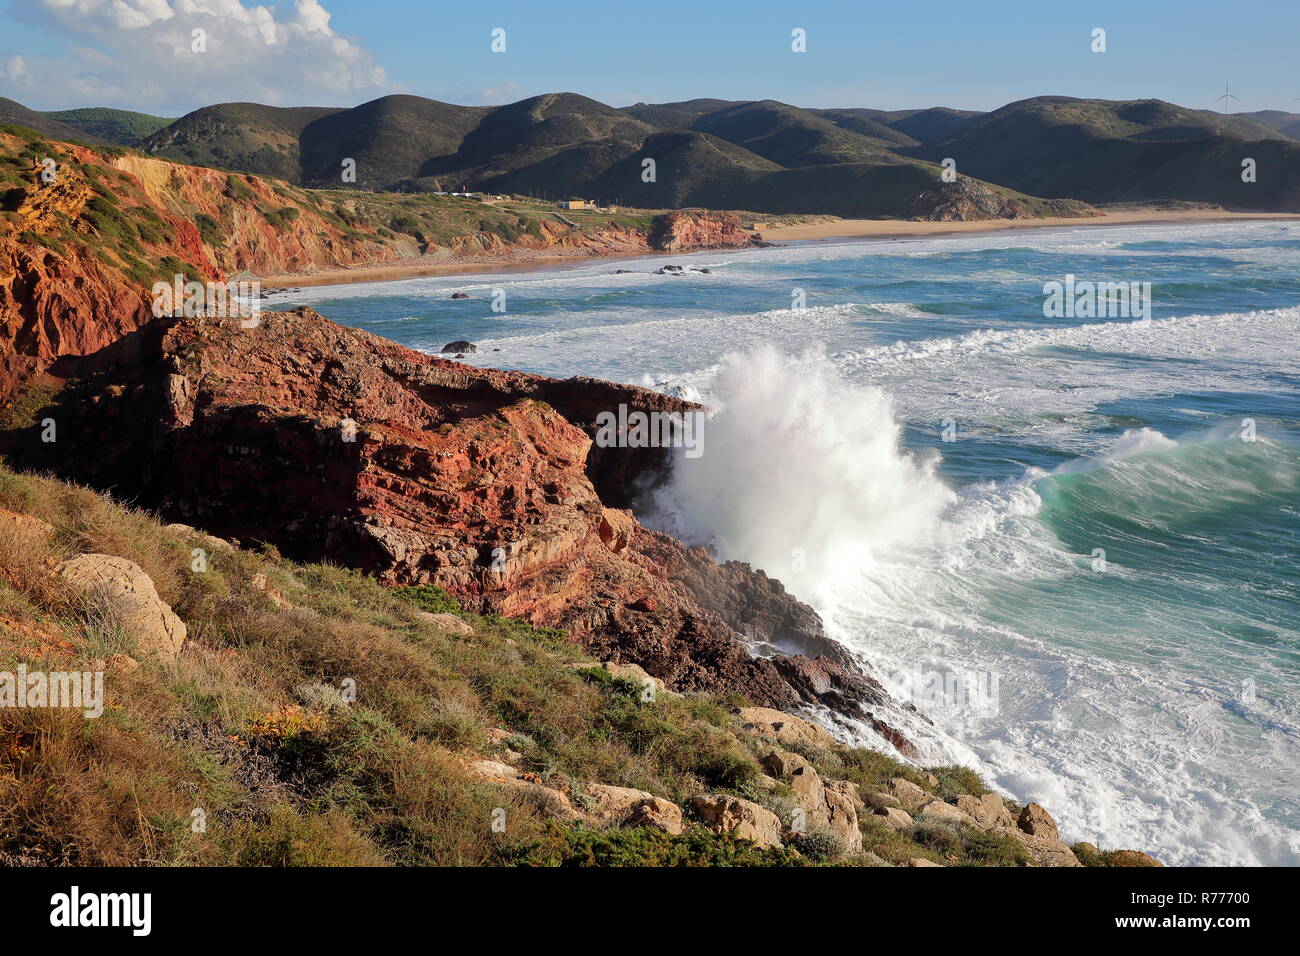 Il Rocky e colorato costa vicino a Carrapateira con Amado beach in background e forti onde, Costa Vicentina, Algarve, PORTOGALLO Foto Stock